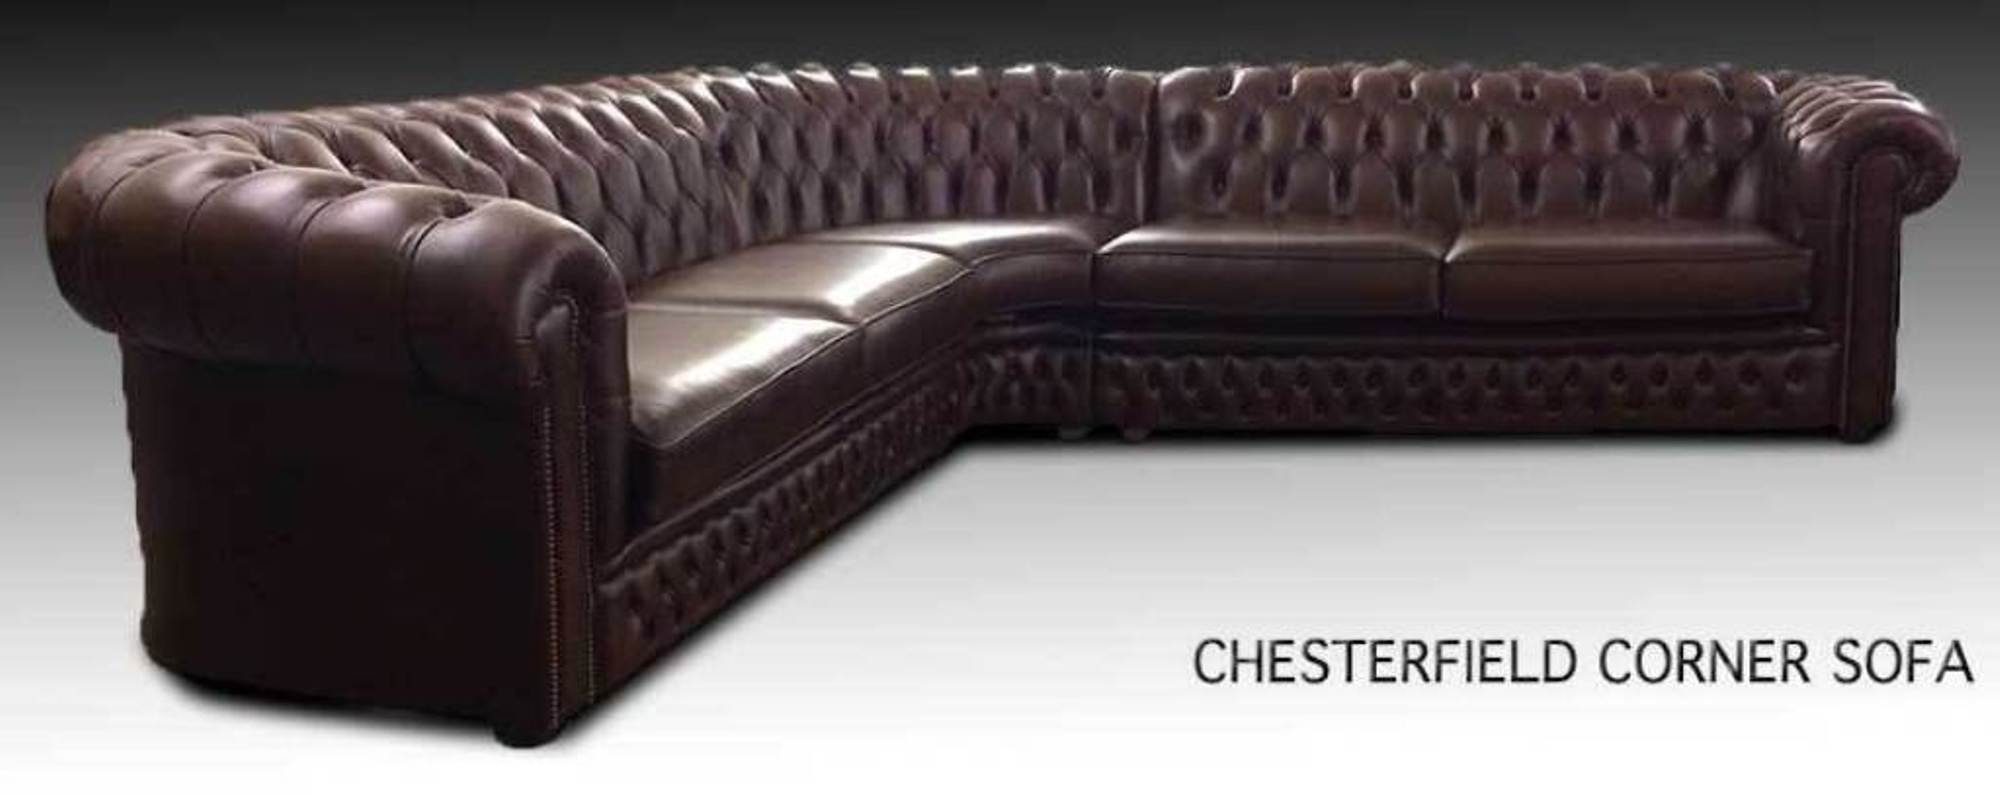 JVmoebel Ecksofa Chesterfield Ecksofa Sofa Couch Polster Eck Design 100% Leder Sofort, 3 Teile, Made in Europa